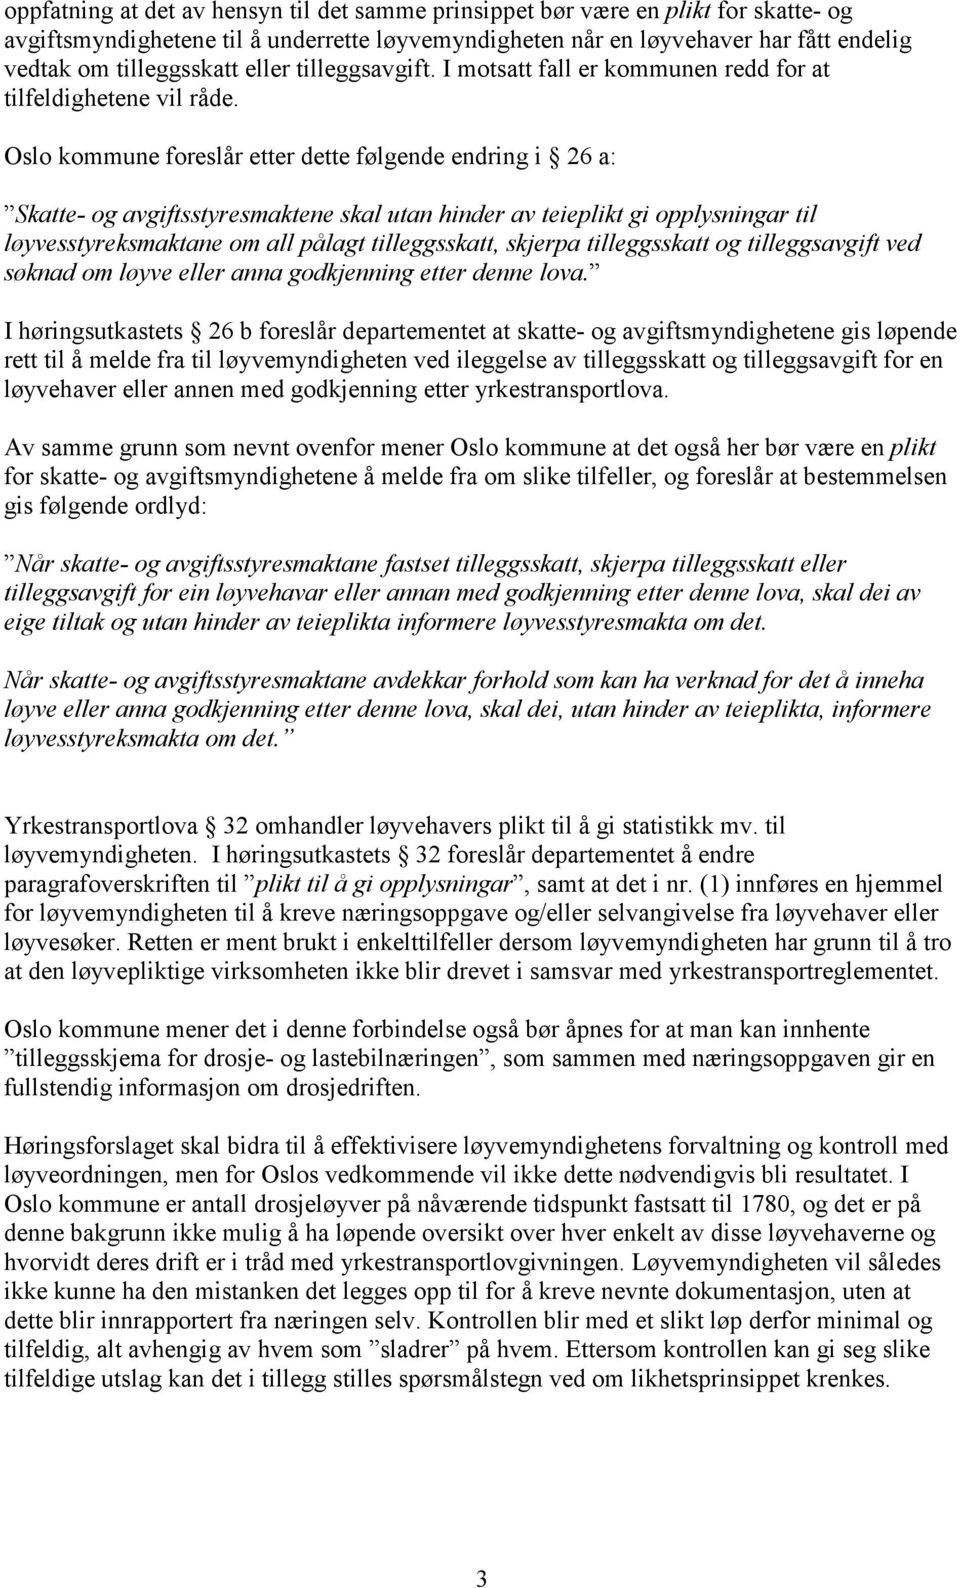 Oslo kommune foreslår etter dette følgende endring i 26 a: Skatte- og avgiftsstyresmaktene skal utan hinder av teieplikt gi opplysningar til løyvesstyreksmaktane om all pålagt tilleggsskatt, skjerpa